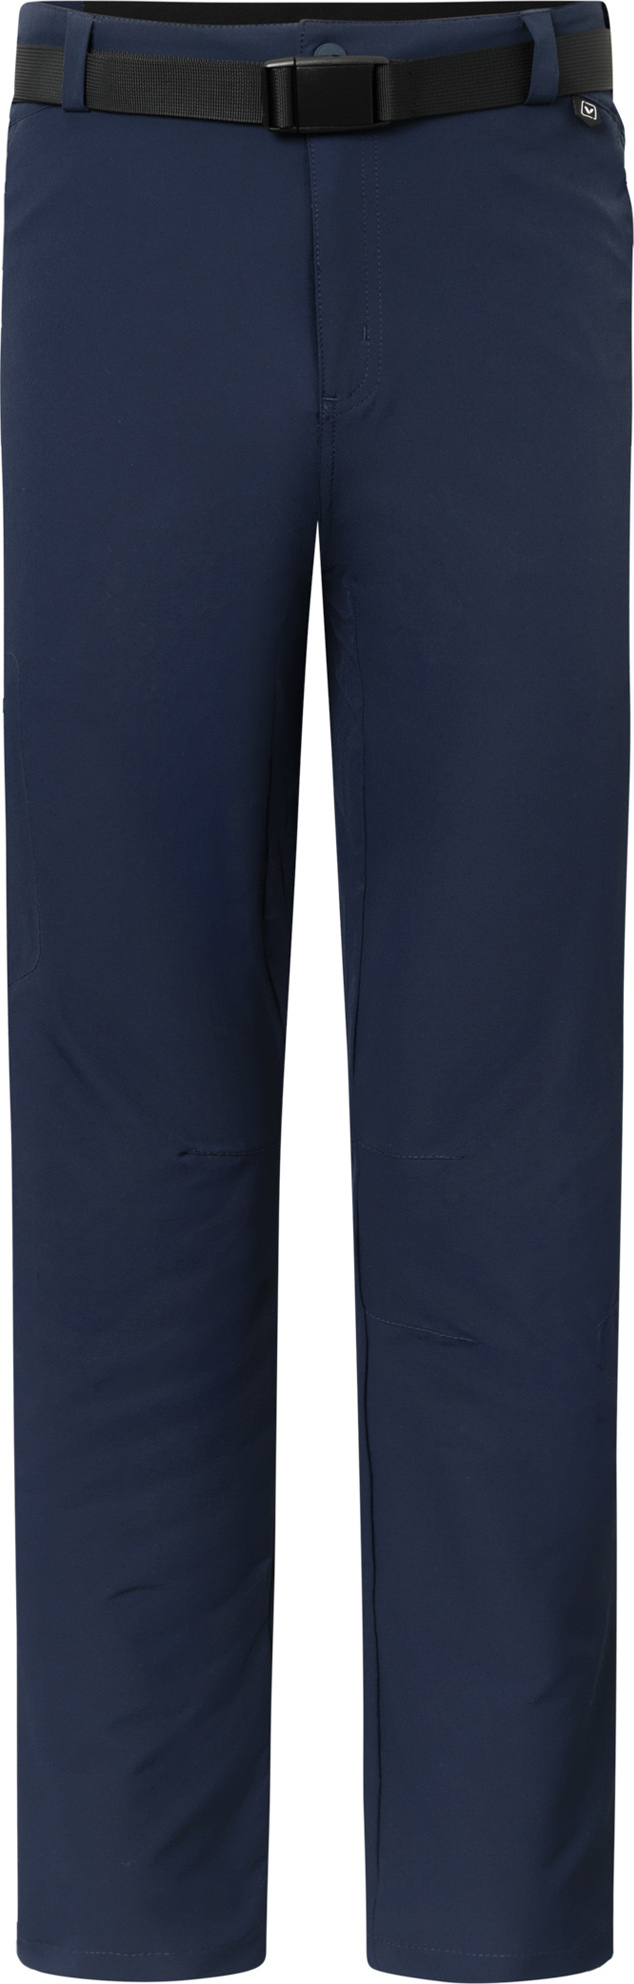 Pánské outdoorové kalhoty VIKING Expander modrá Velikost: L